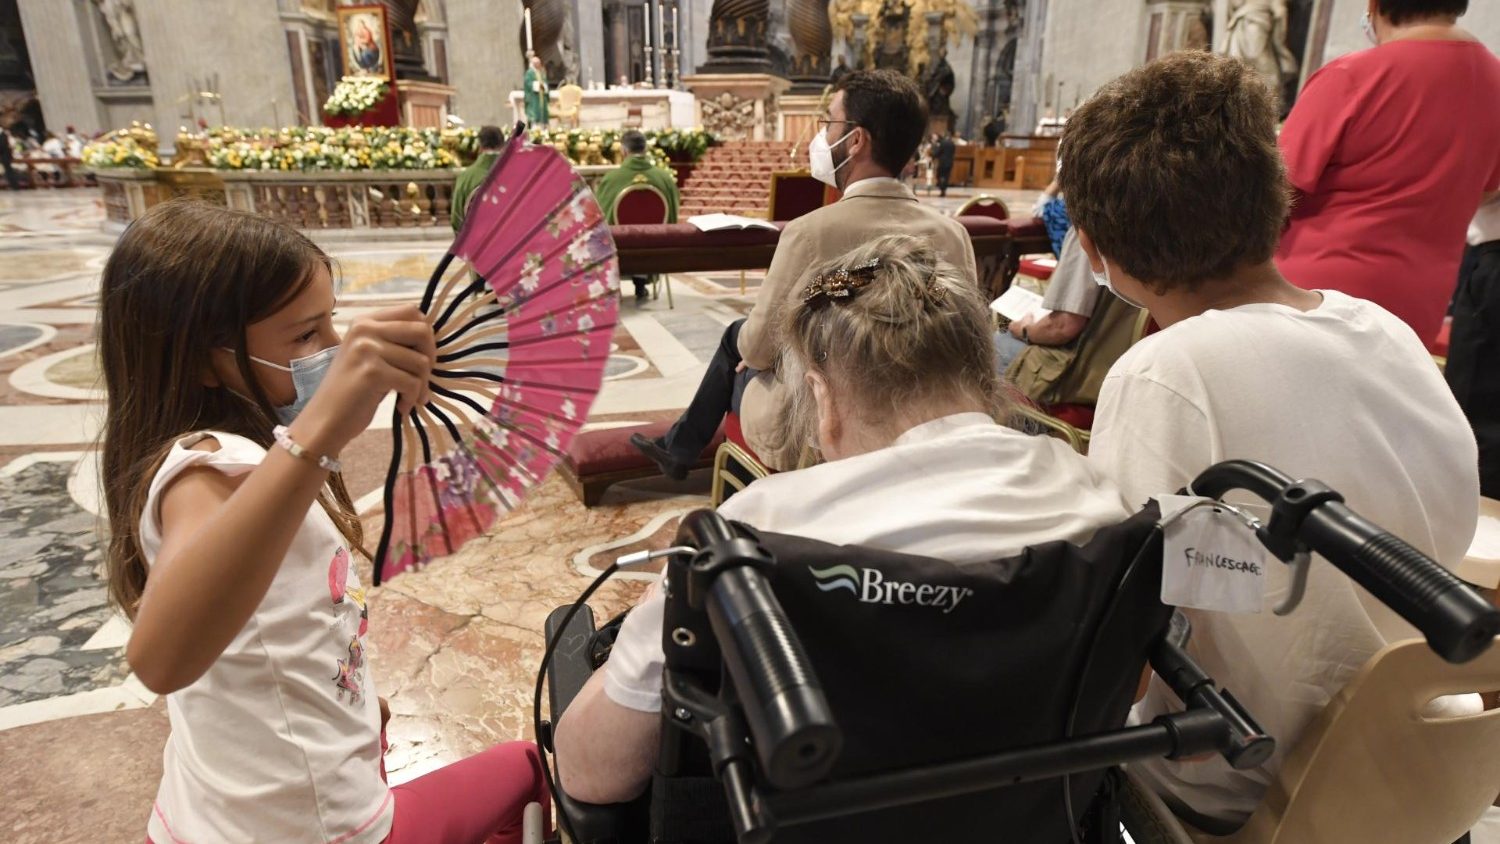 Папа Франциск: заботиться о стариках с любовью